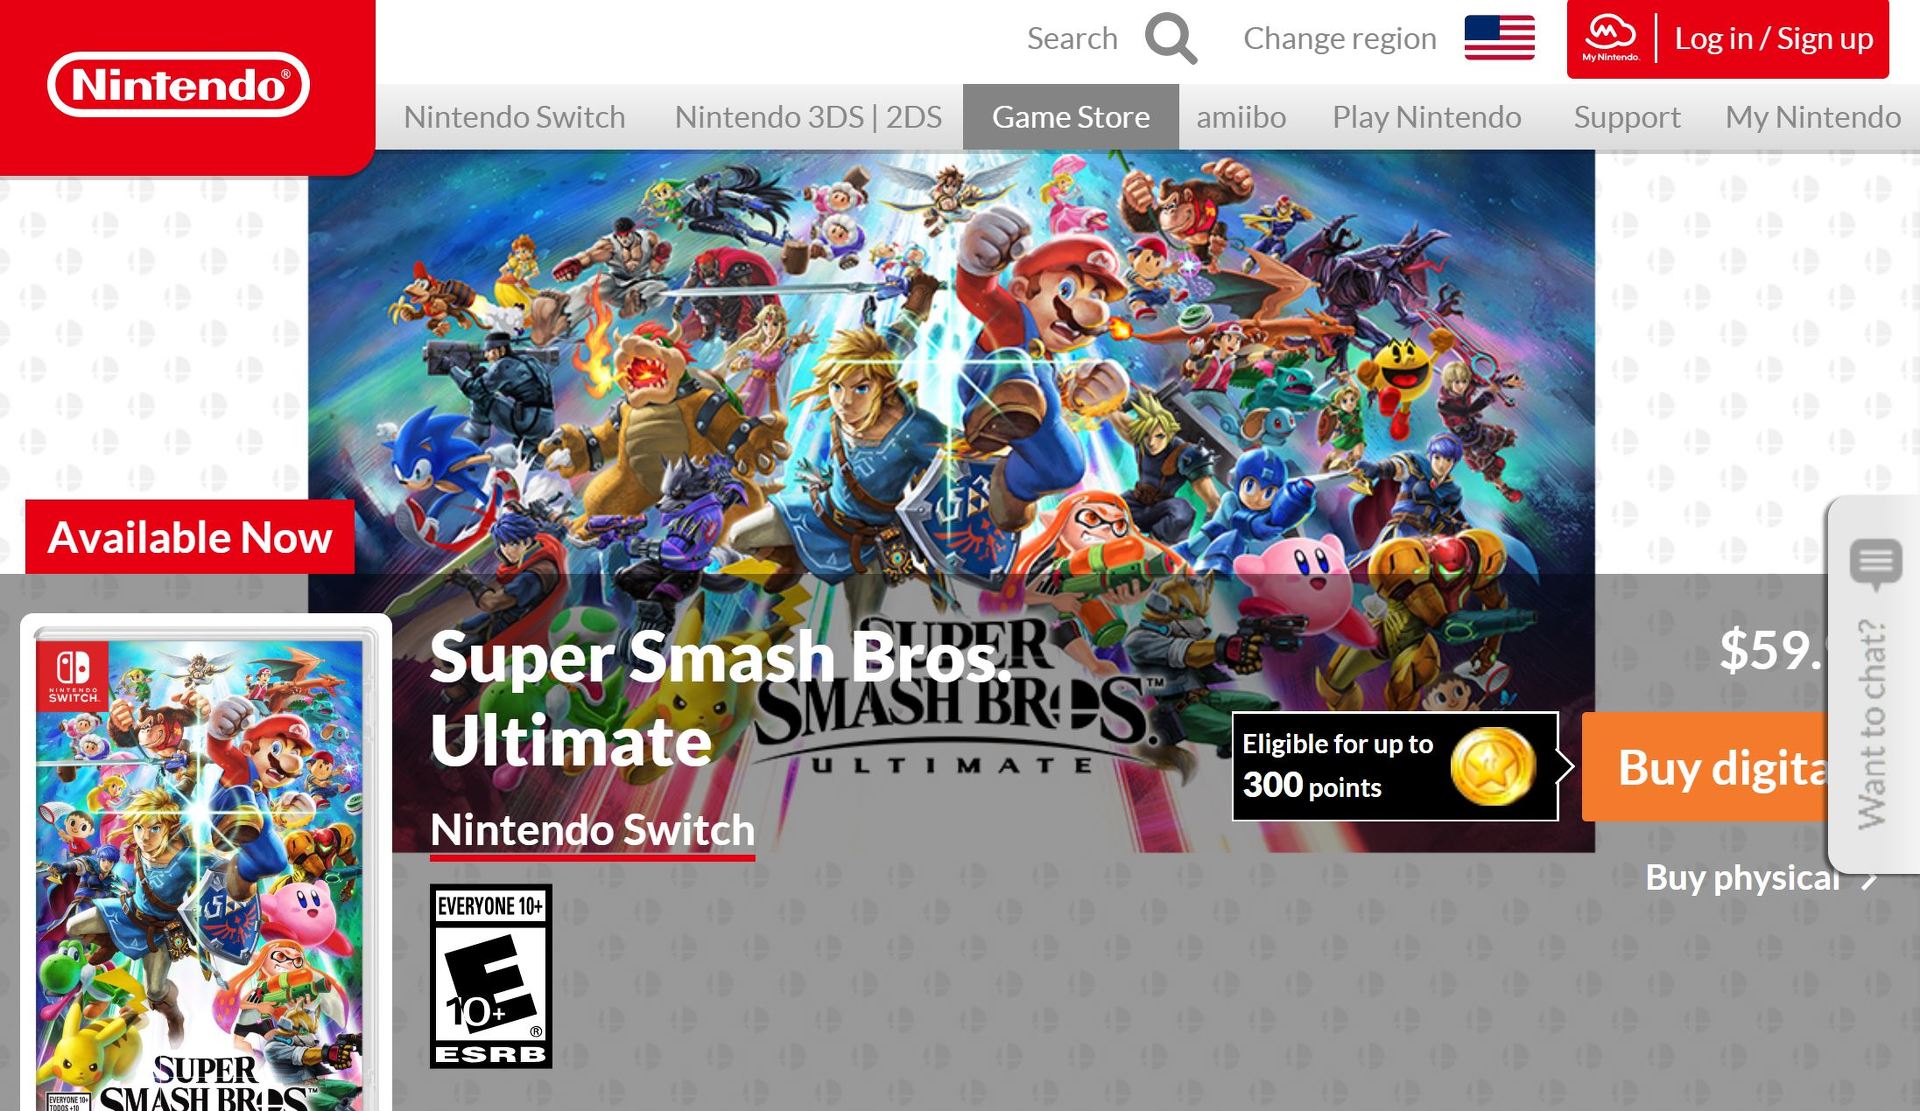 「Nintendo Switch」、米国での累計販売台数870万台超でゲーム端末として最速ペースに - ITmedia NEWS